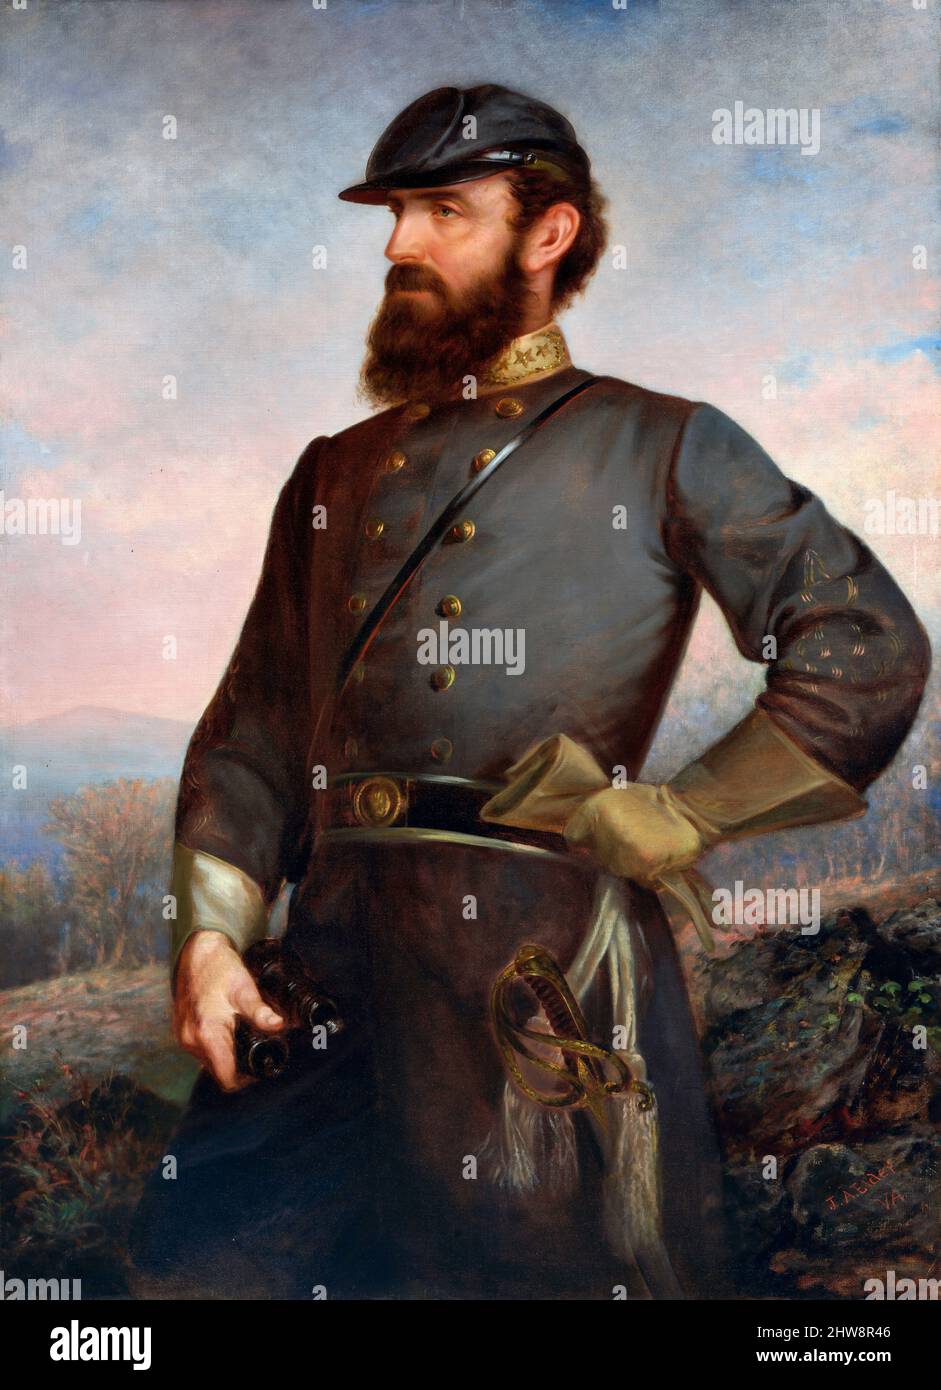 Stonewall Jackson. Retrato del General del Ejército Confederado Thomas Jonathan 'Stonewall' Jackson (1824-1863) por John Adams Elder, óleo sobre lienzo, 1876 Foto de stock